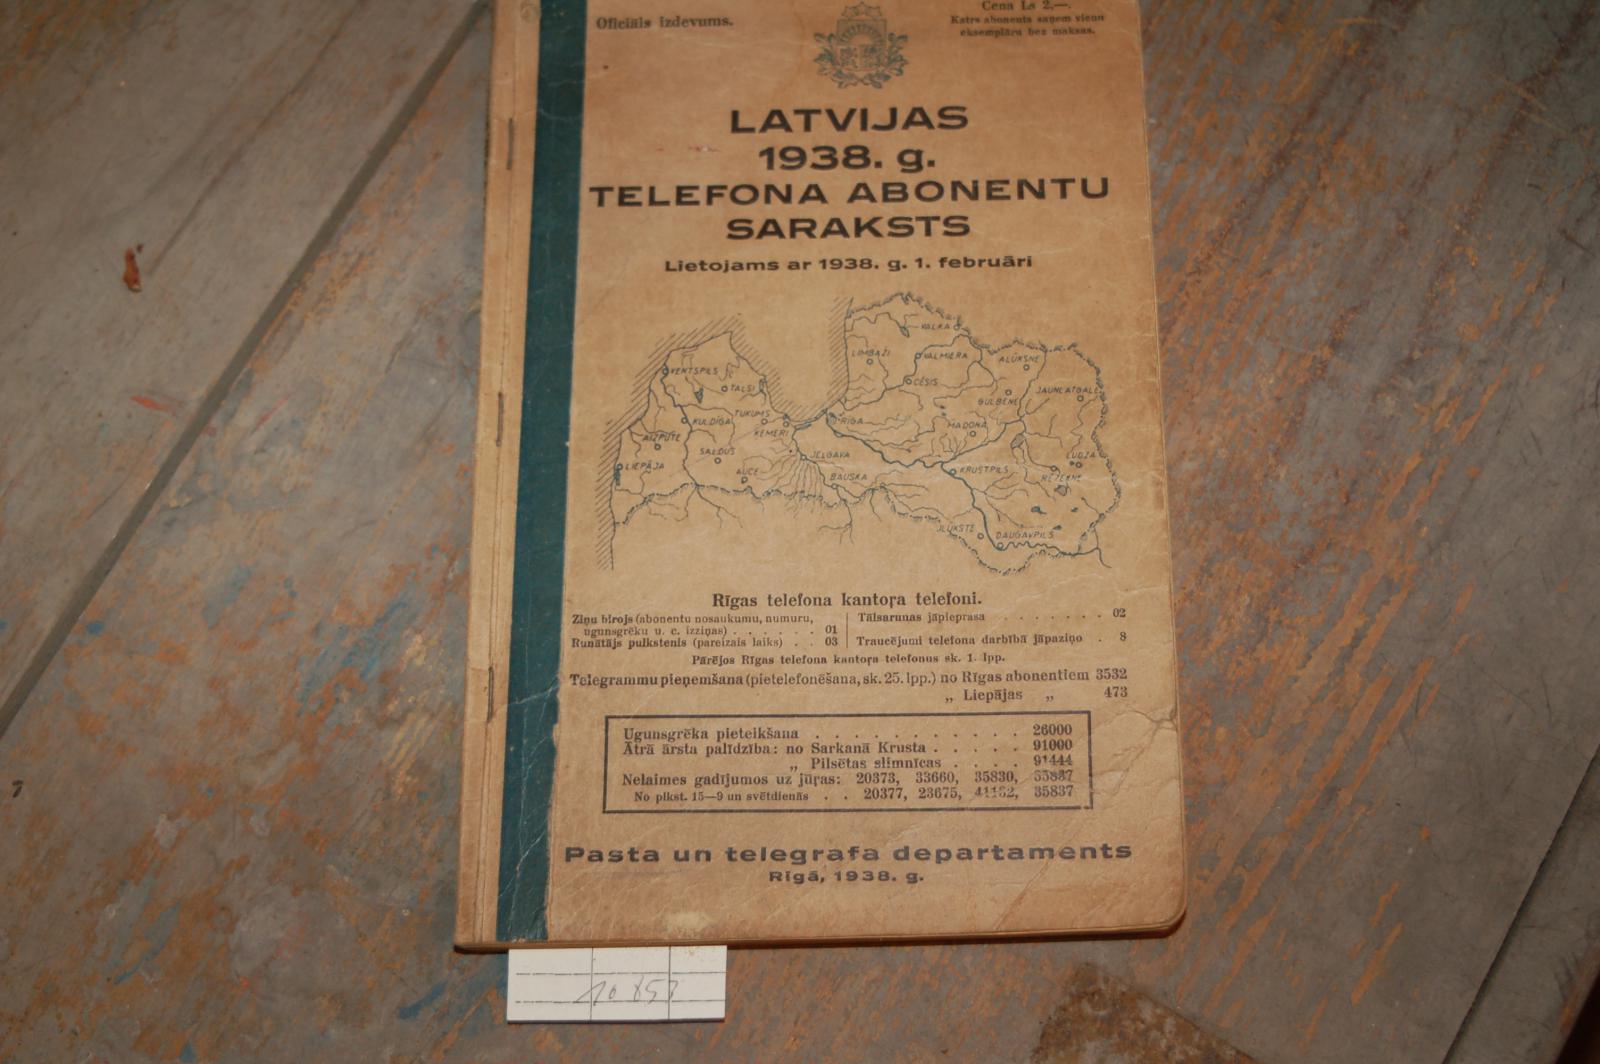 "."  Latvijas 1939 g. Telefona Abonentu Saraksts lietojams ar 1938 g. 1. F 